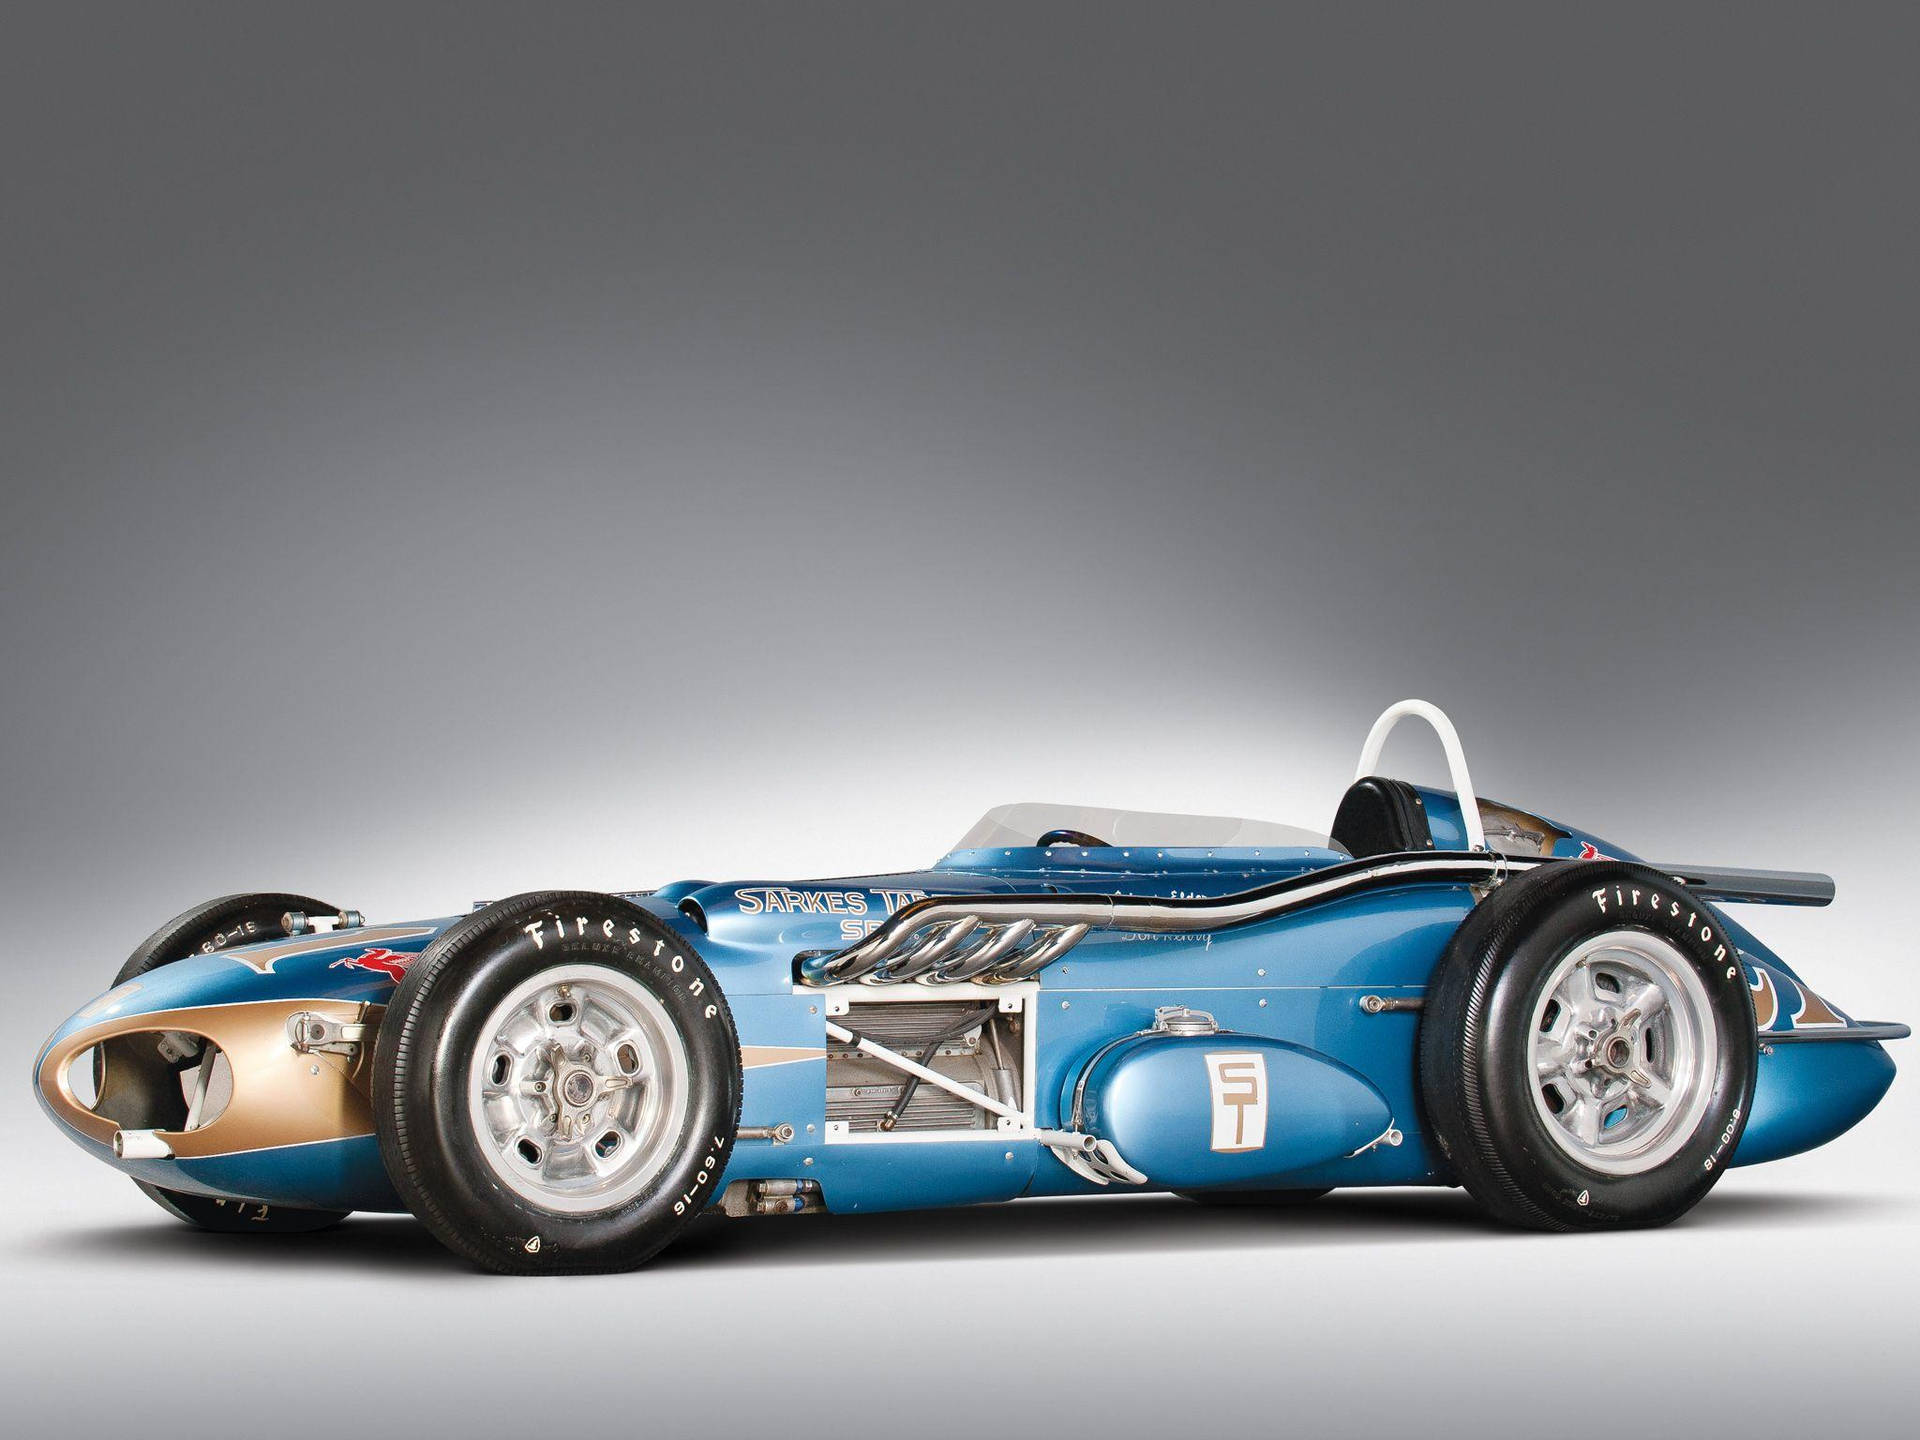 Classic Indianapolis 500 Blue Car